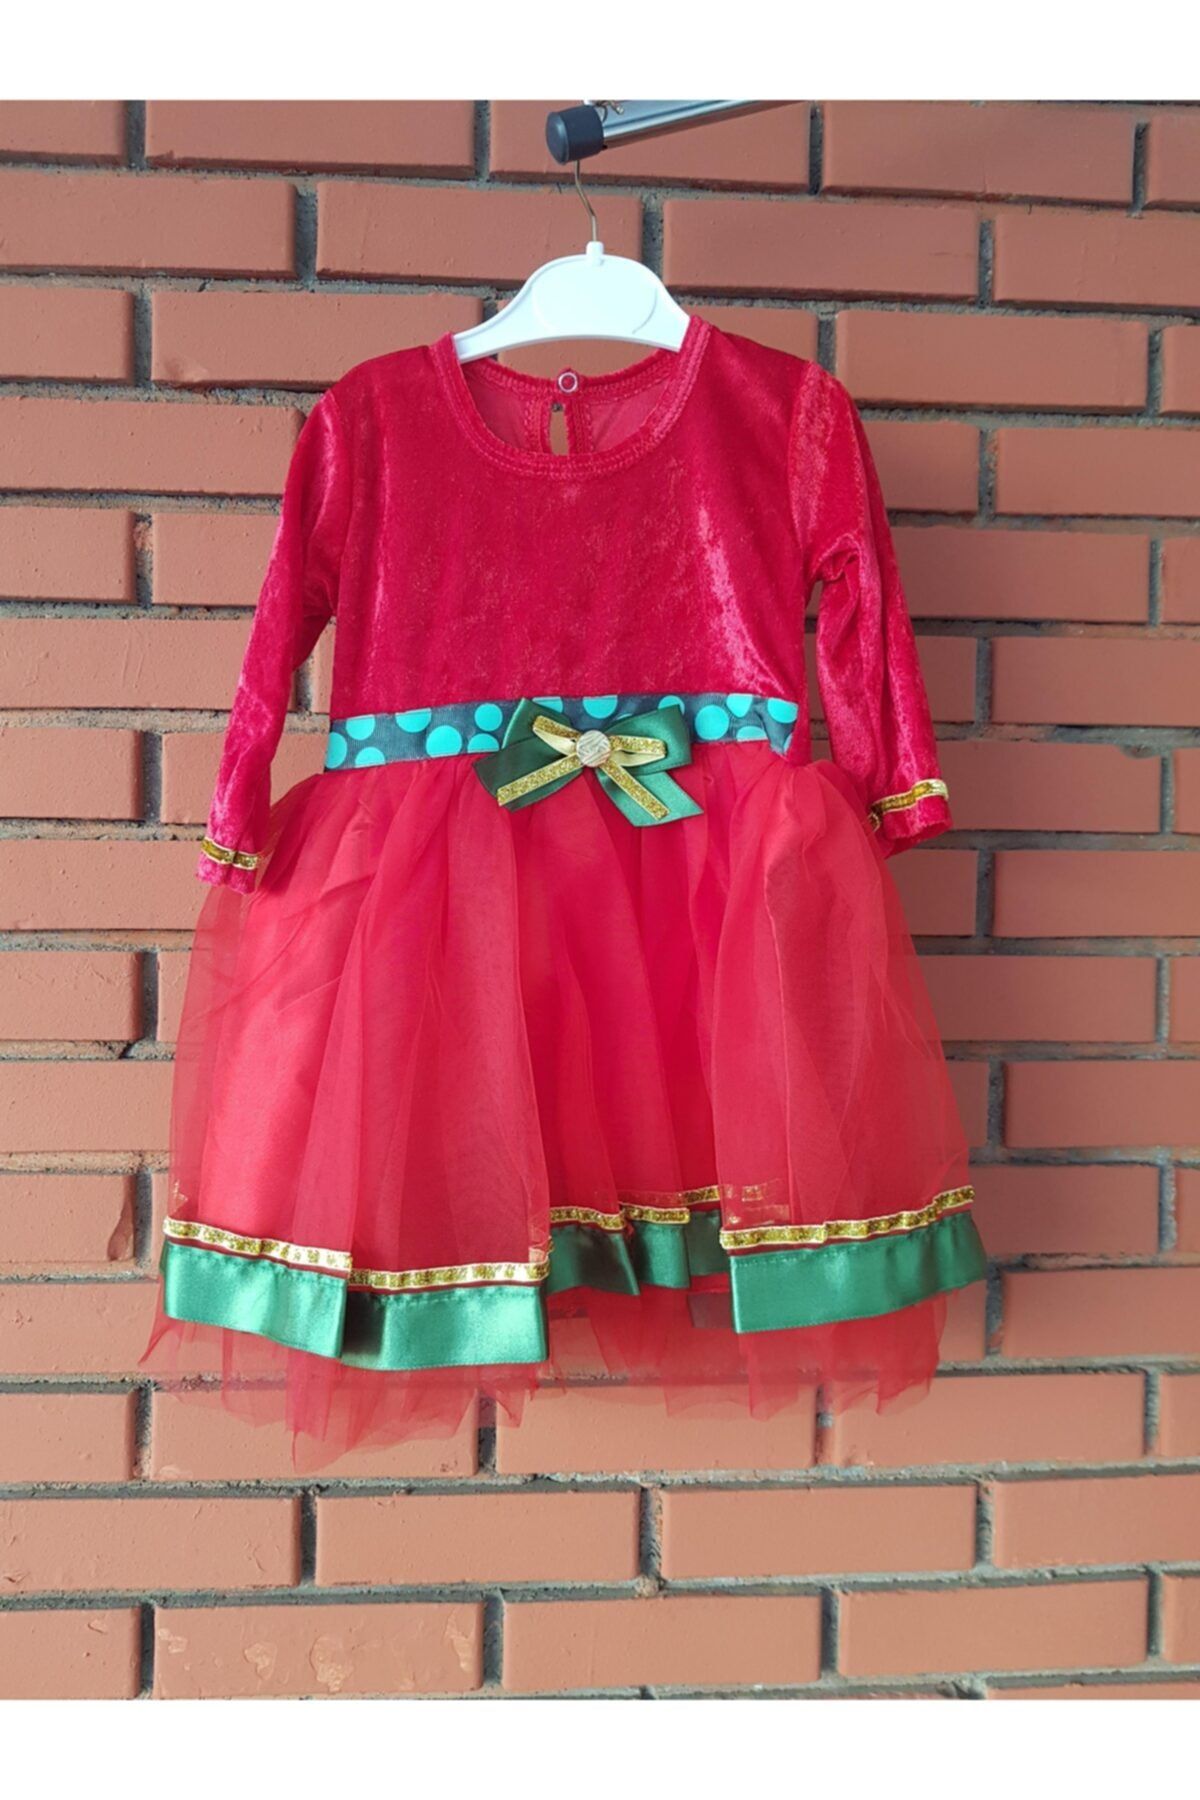 hediyepostası Kız Çocuk Yılbaşı Elbisesi 12 Aylık